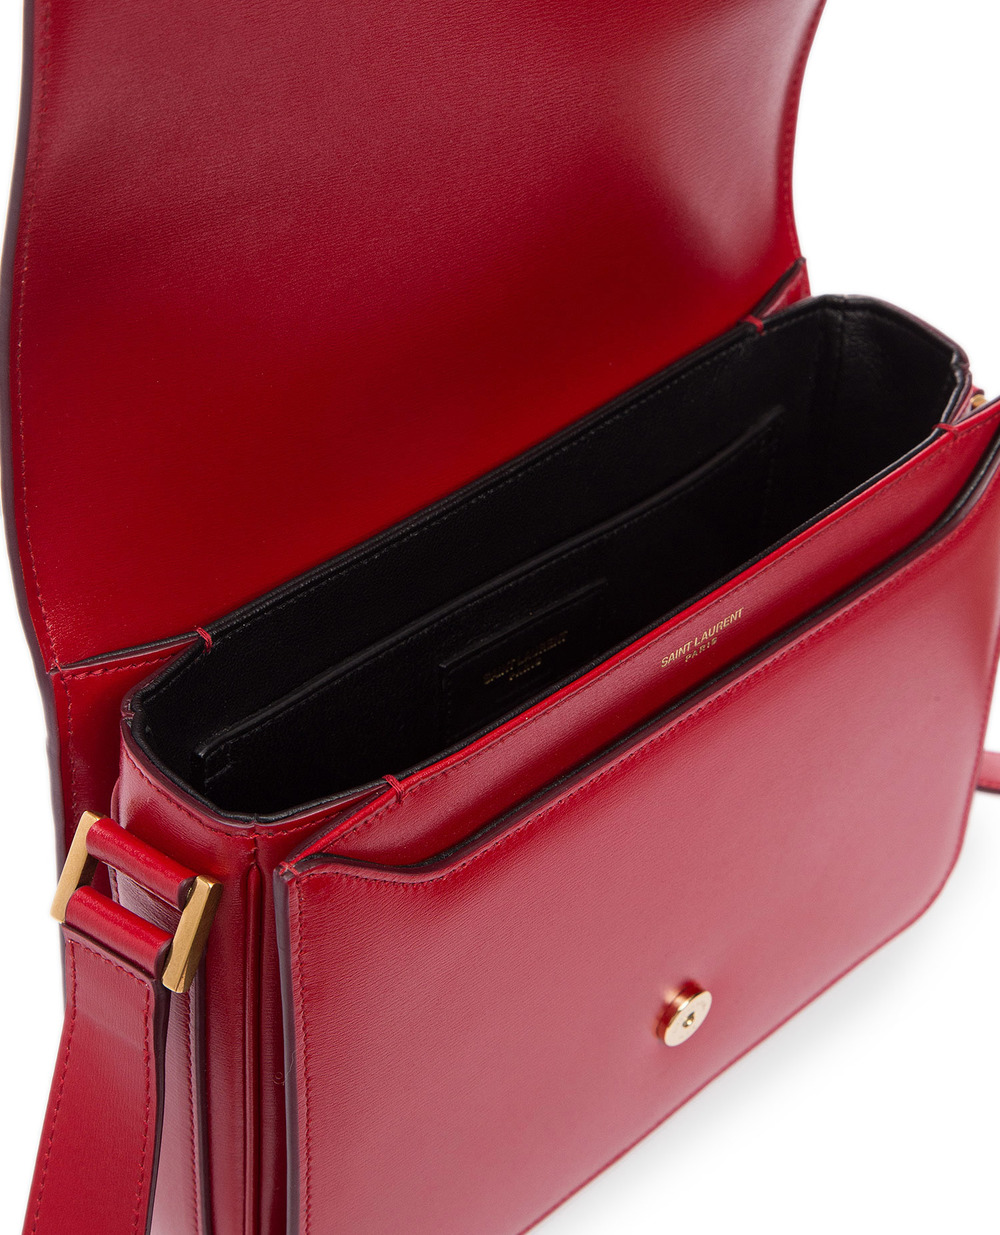 Кожаная сумка Le 61 medium Saint Laurent 568568-02G2W, красный цвет • Купить в интернет-магазине Kameron